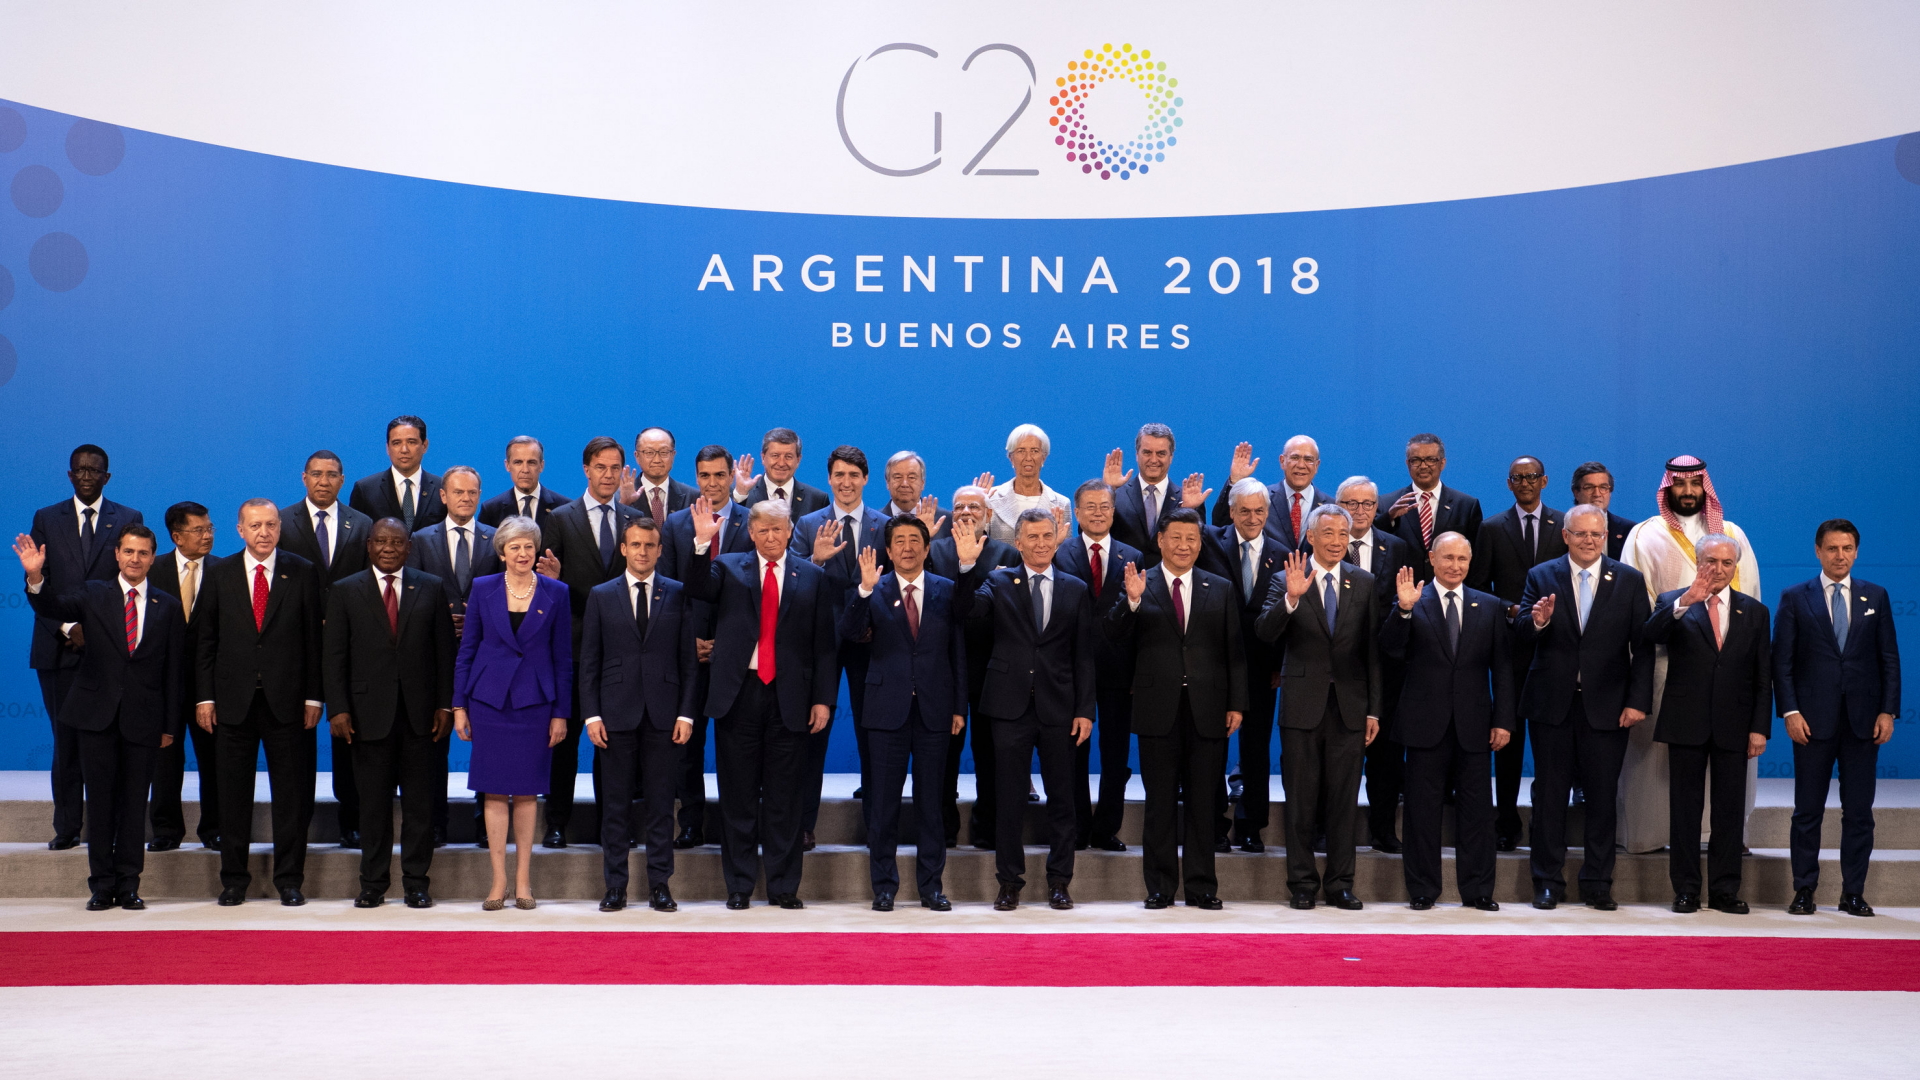 Teilnehmer des Gipfels haben sich im Tagungszentrum des G20 Gipfeltreffens in Buenos Aires zu einem Familienfoto aufgestellt. | Bildquelle: dpa